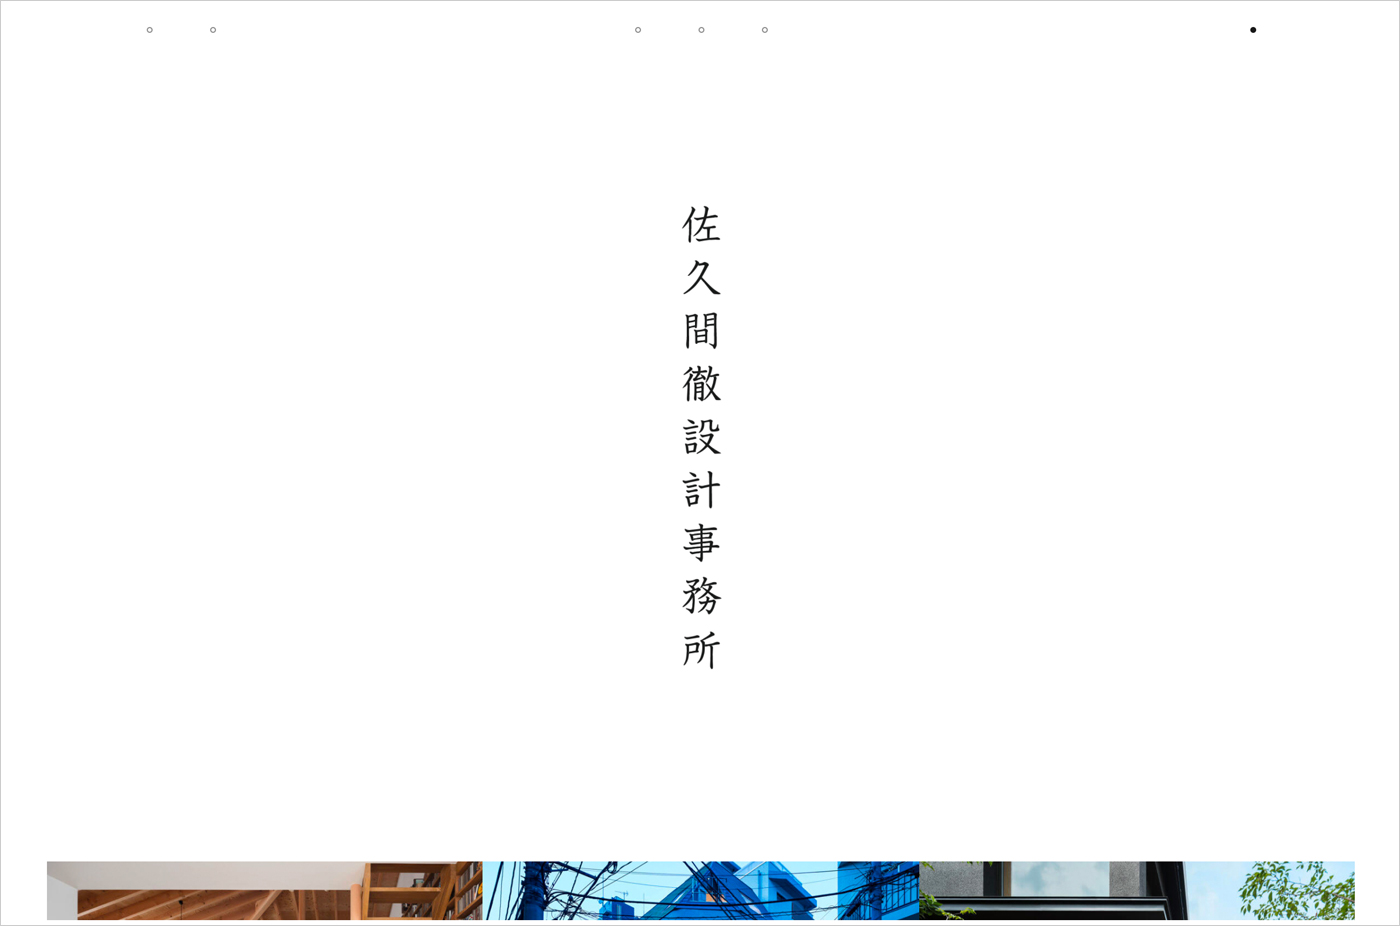 佐久間徹設計事務所 │ 武蔵野市吉祥寺にある建築設計事務所ウェブサイトの画面キャプチャ画像